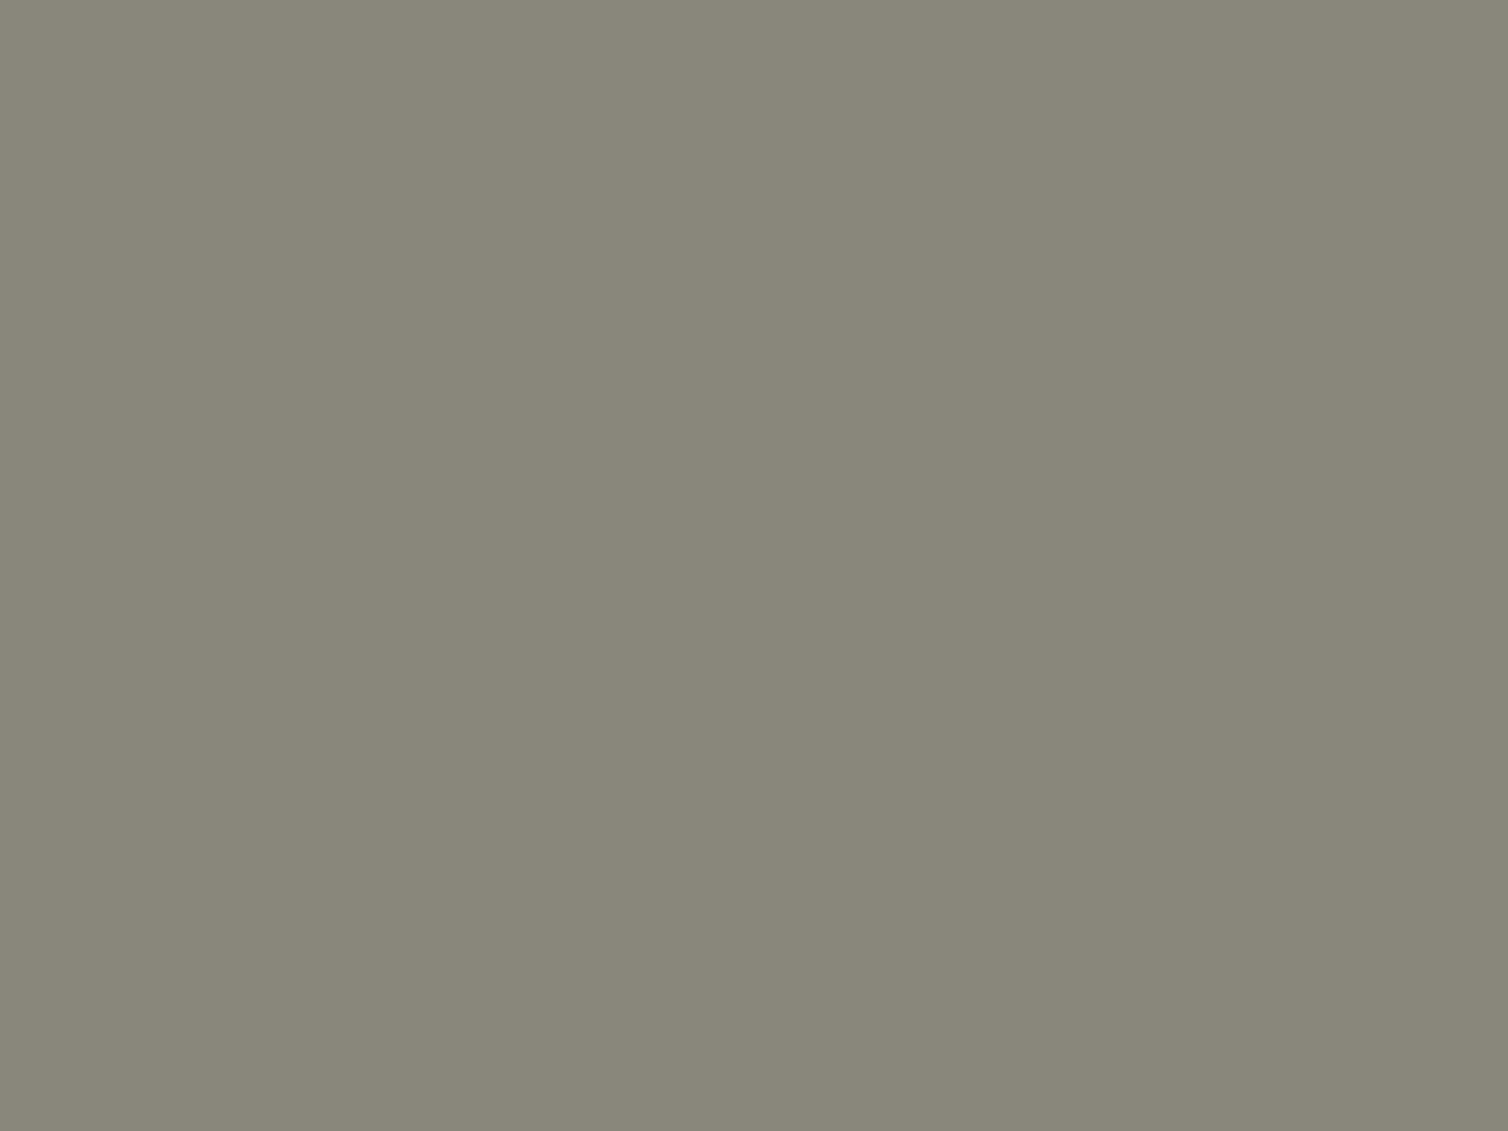 Илья Репин. Портрет Льва Толстого (фрагмент). 1887. Государственная Третьяковская галерея, Москва